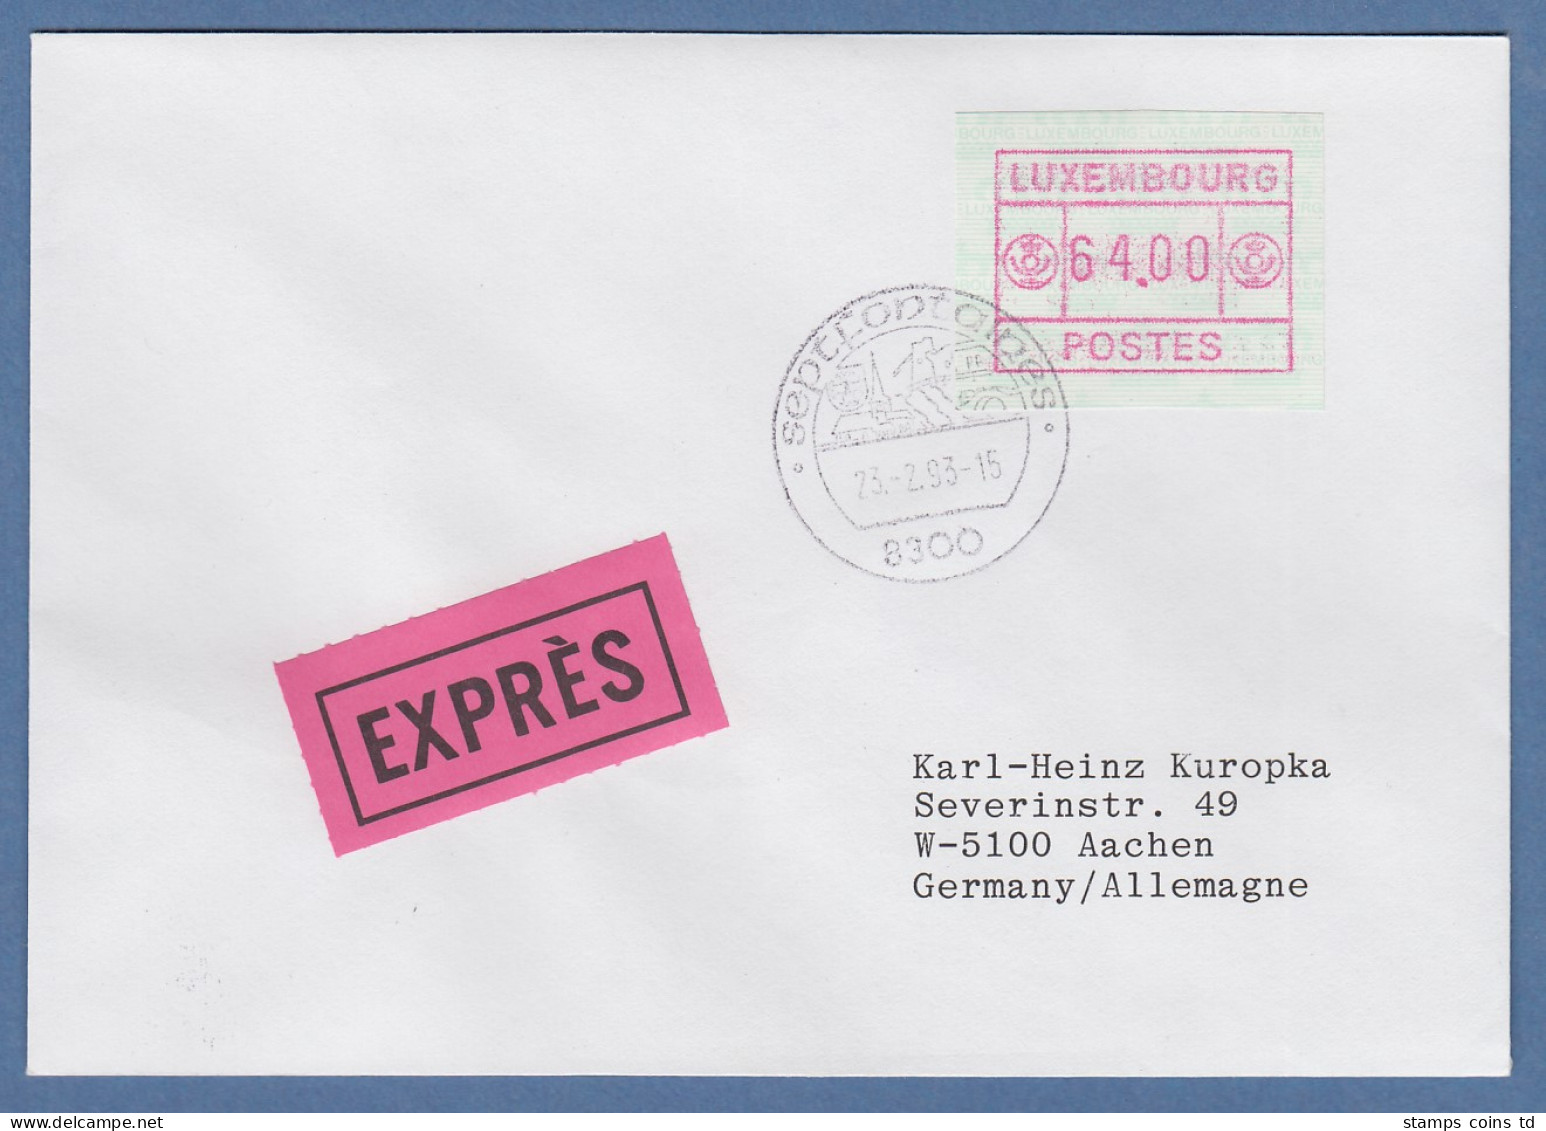 Luxemburg ATM Gr. POSTES Mi.-Nr. 3 Wert 64.00 Auf Express-Brief Nach Aachen - Automatenmarken